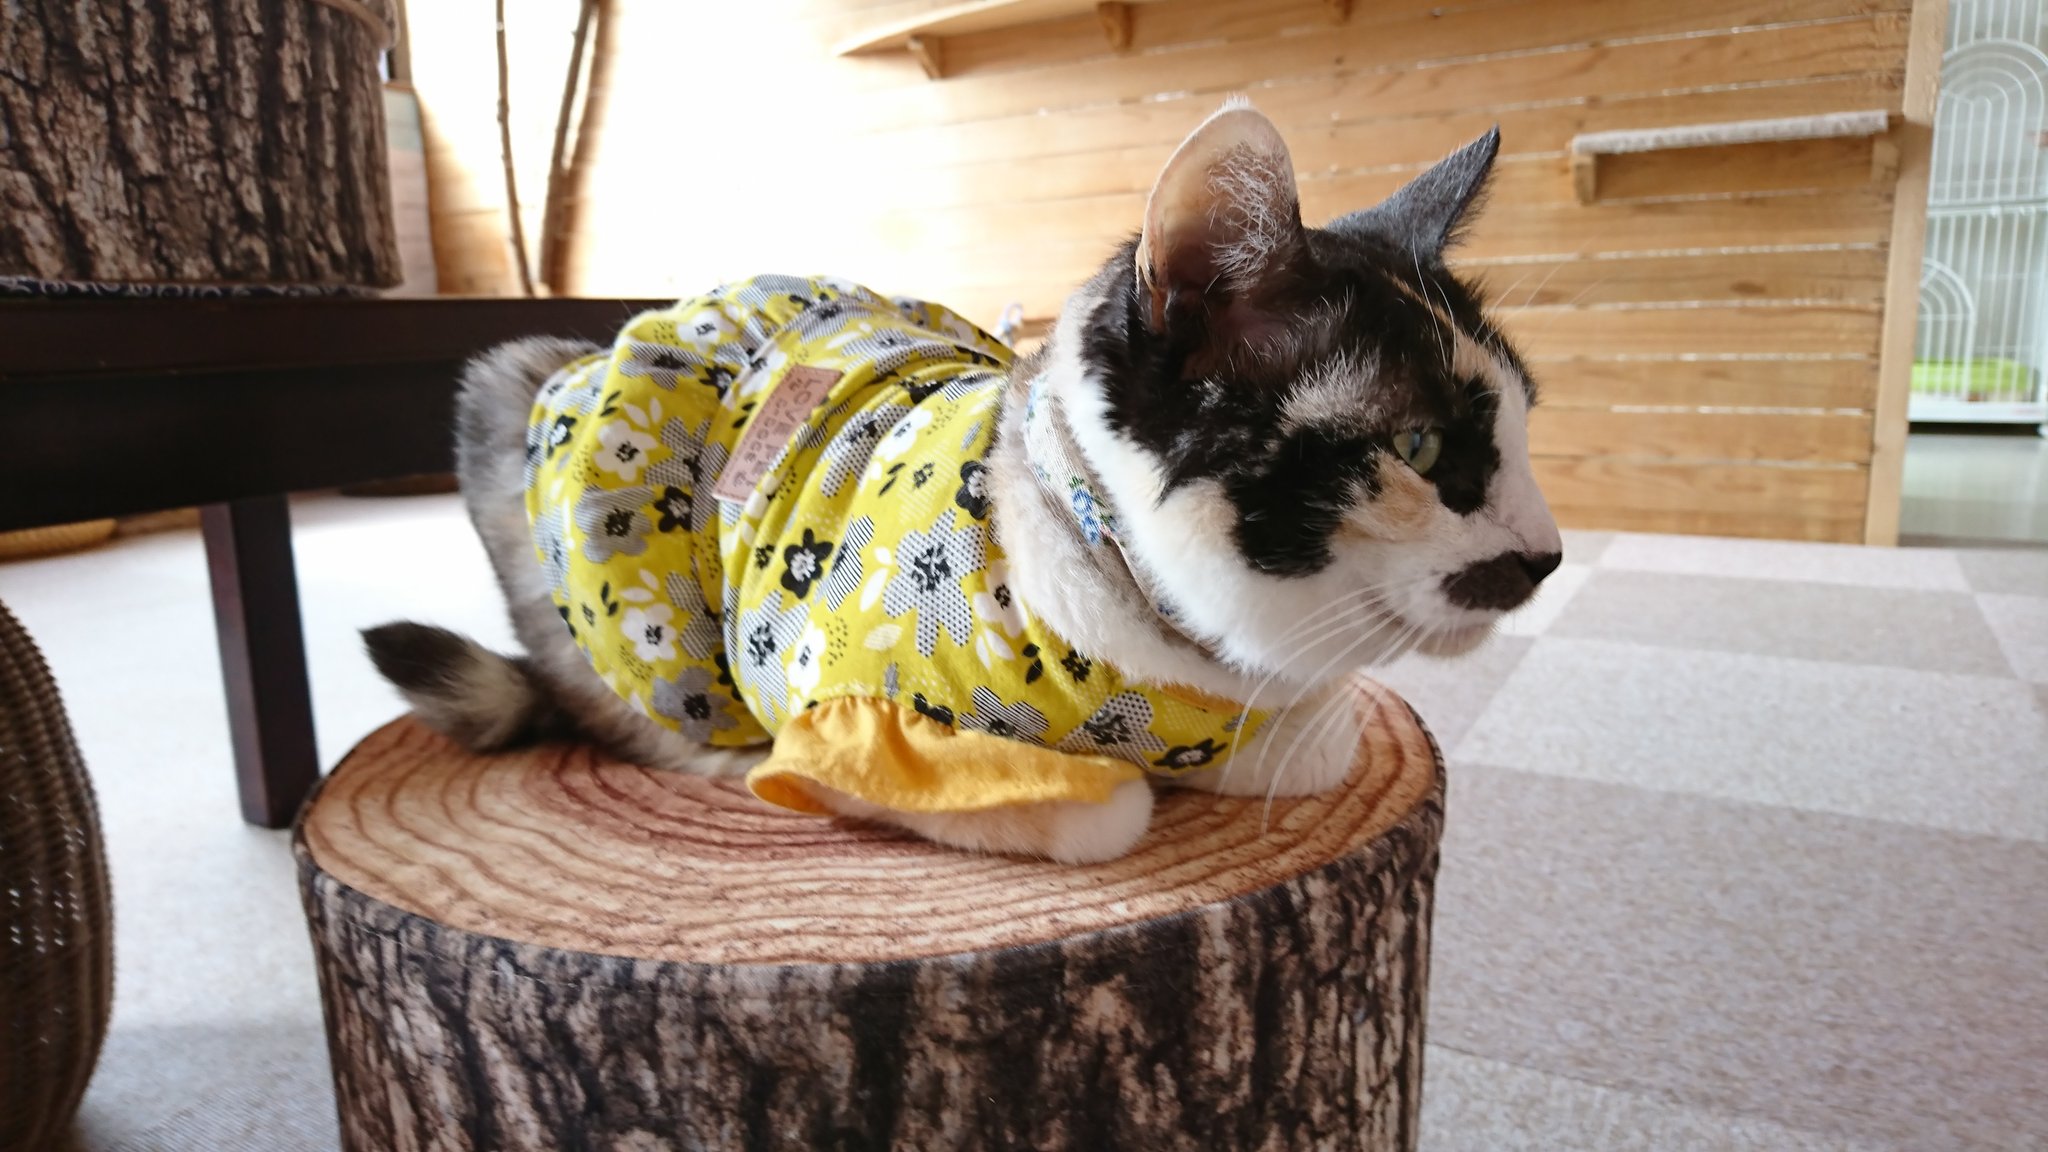 保護猫カフェもりねこ on Twitter "盛岡市保健所にゃんとも預りボラさん宅を経てやってきたペコちゃん。 噂